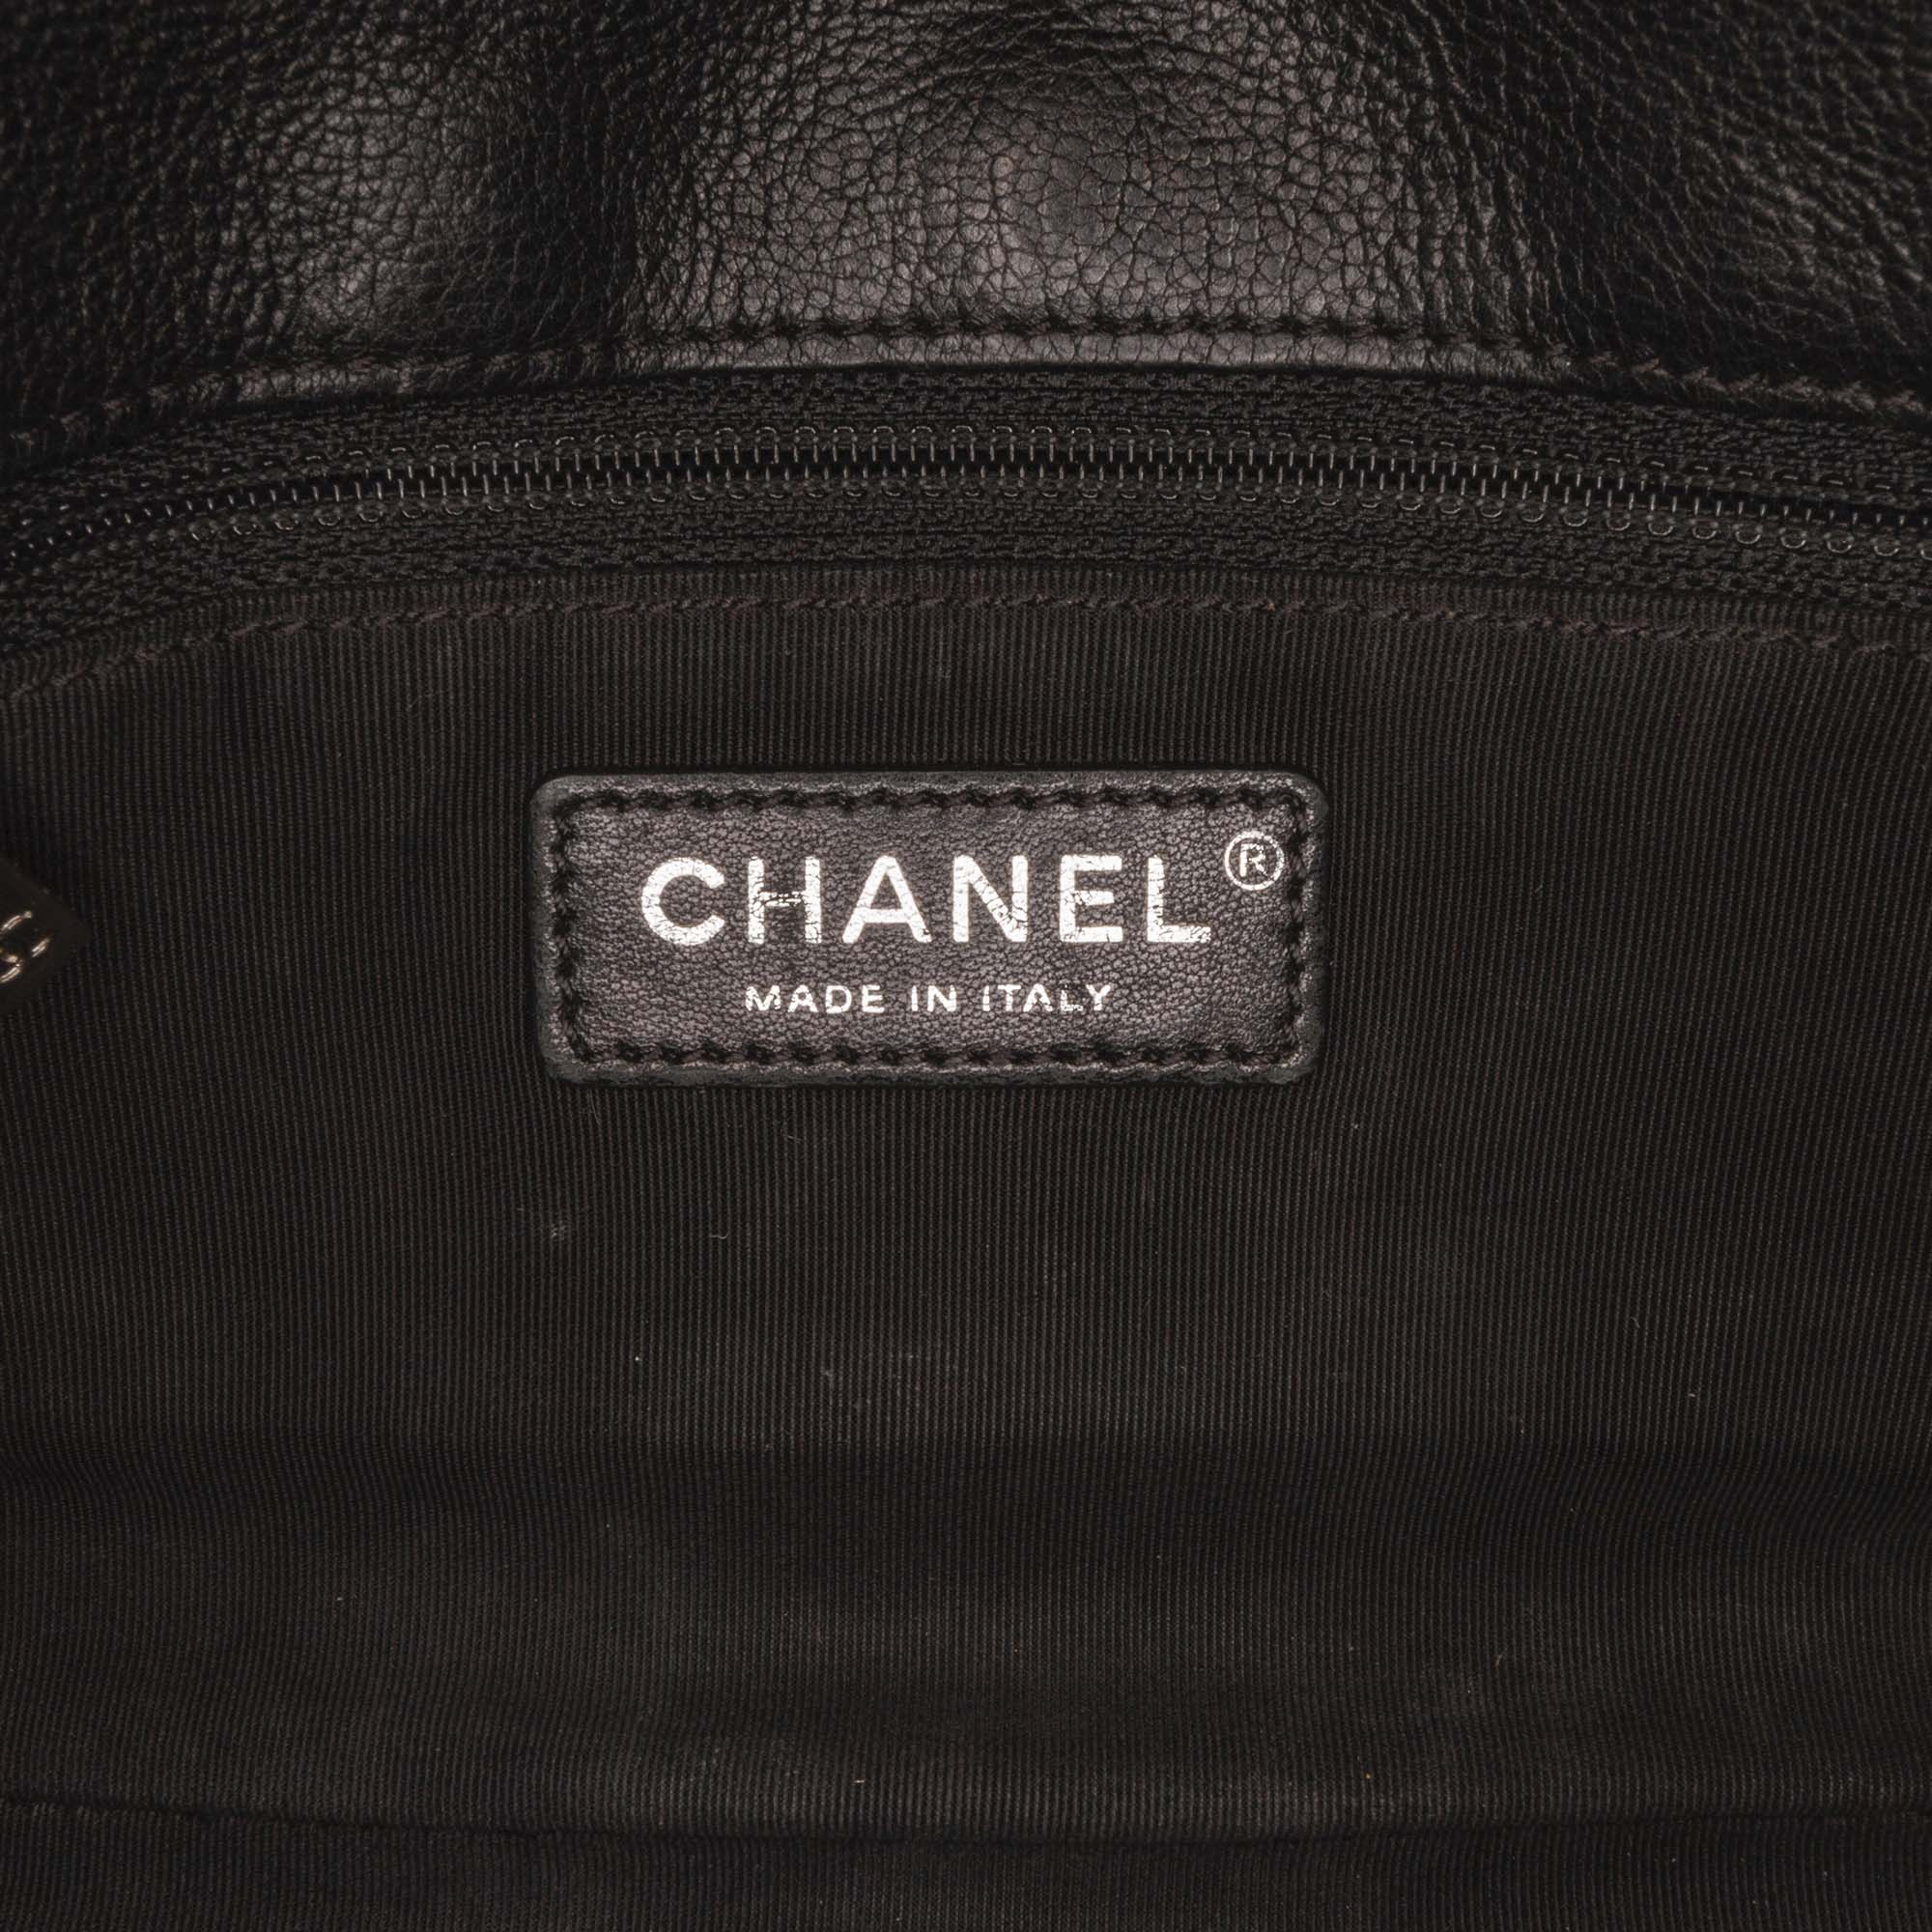 Chanel Black Mini Chevron Stud Wars Flap